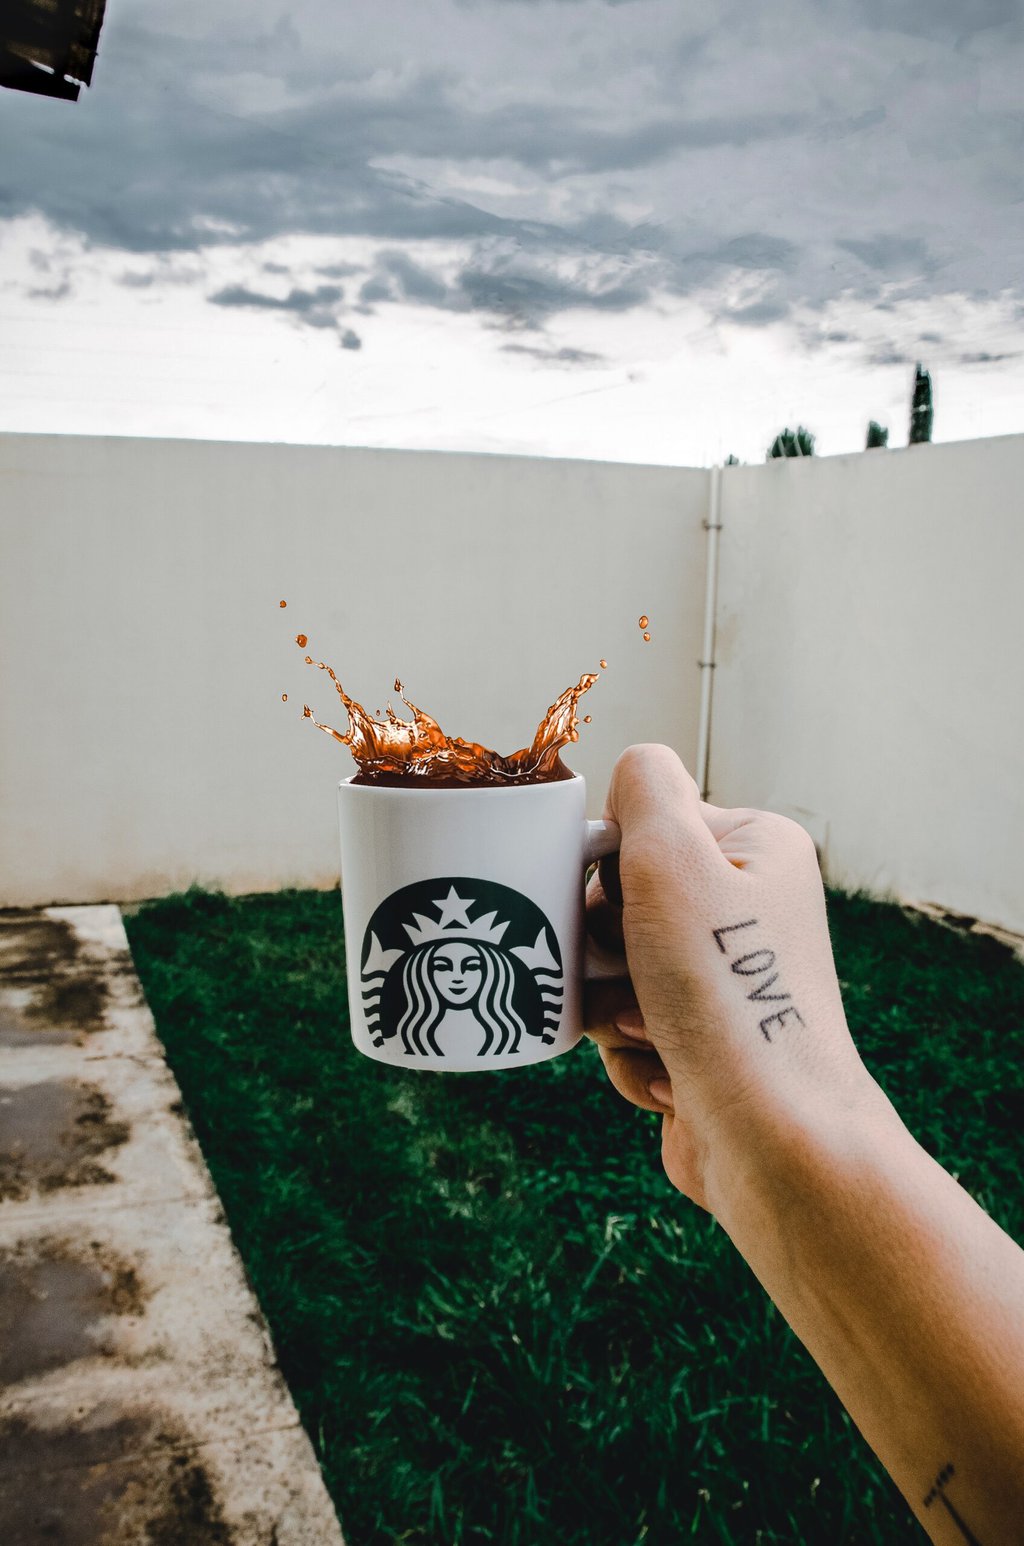 Café Starbucks bajo en ácido y más para estómagos sensibles